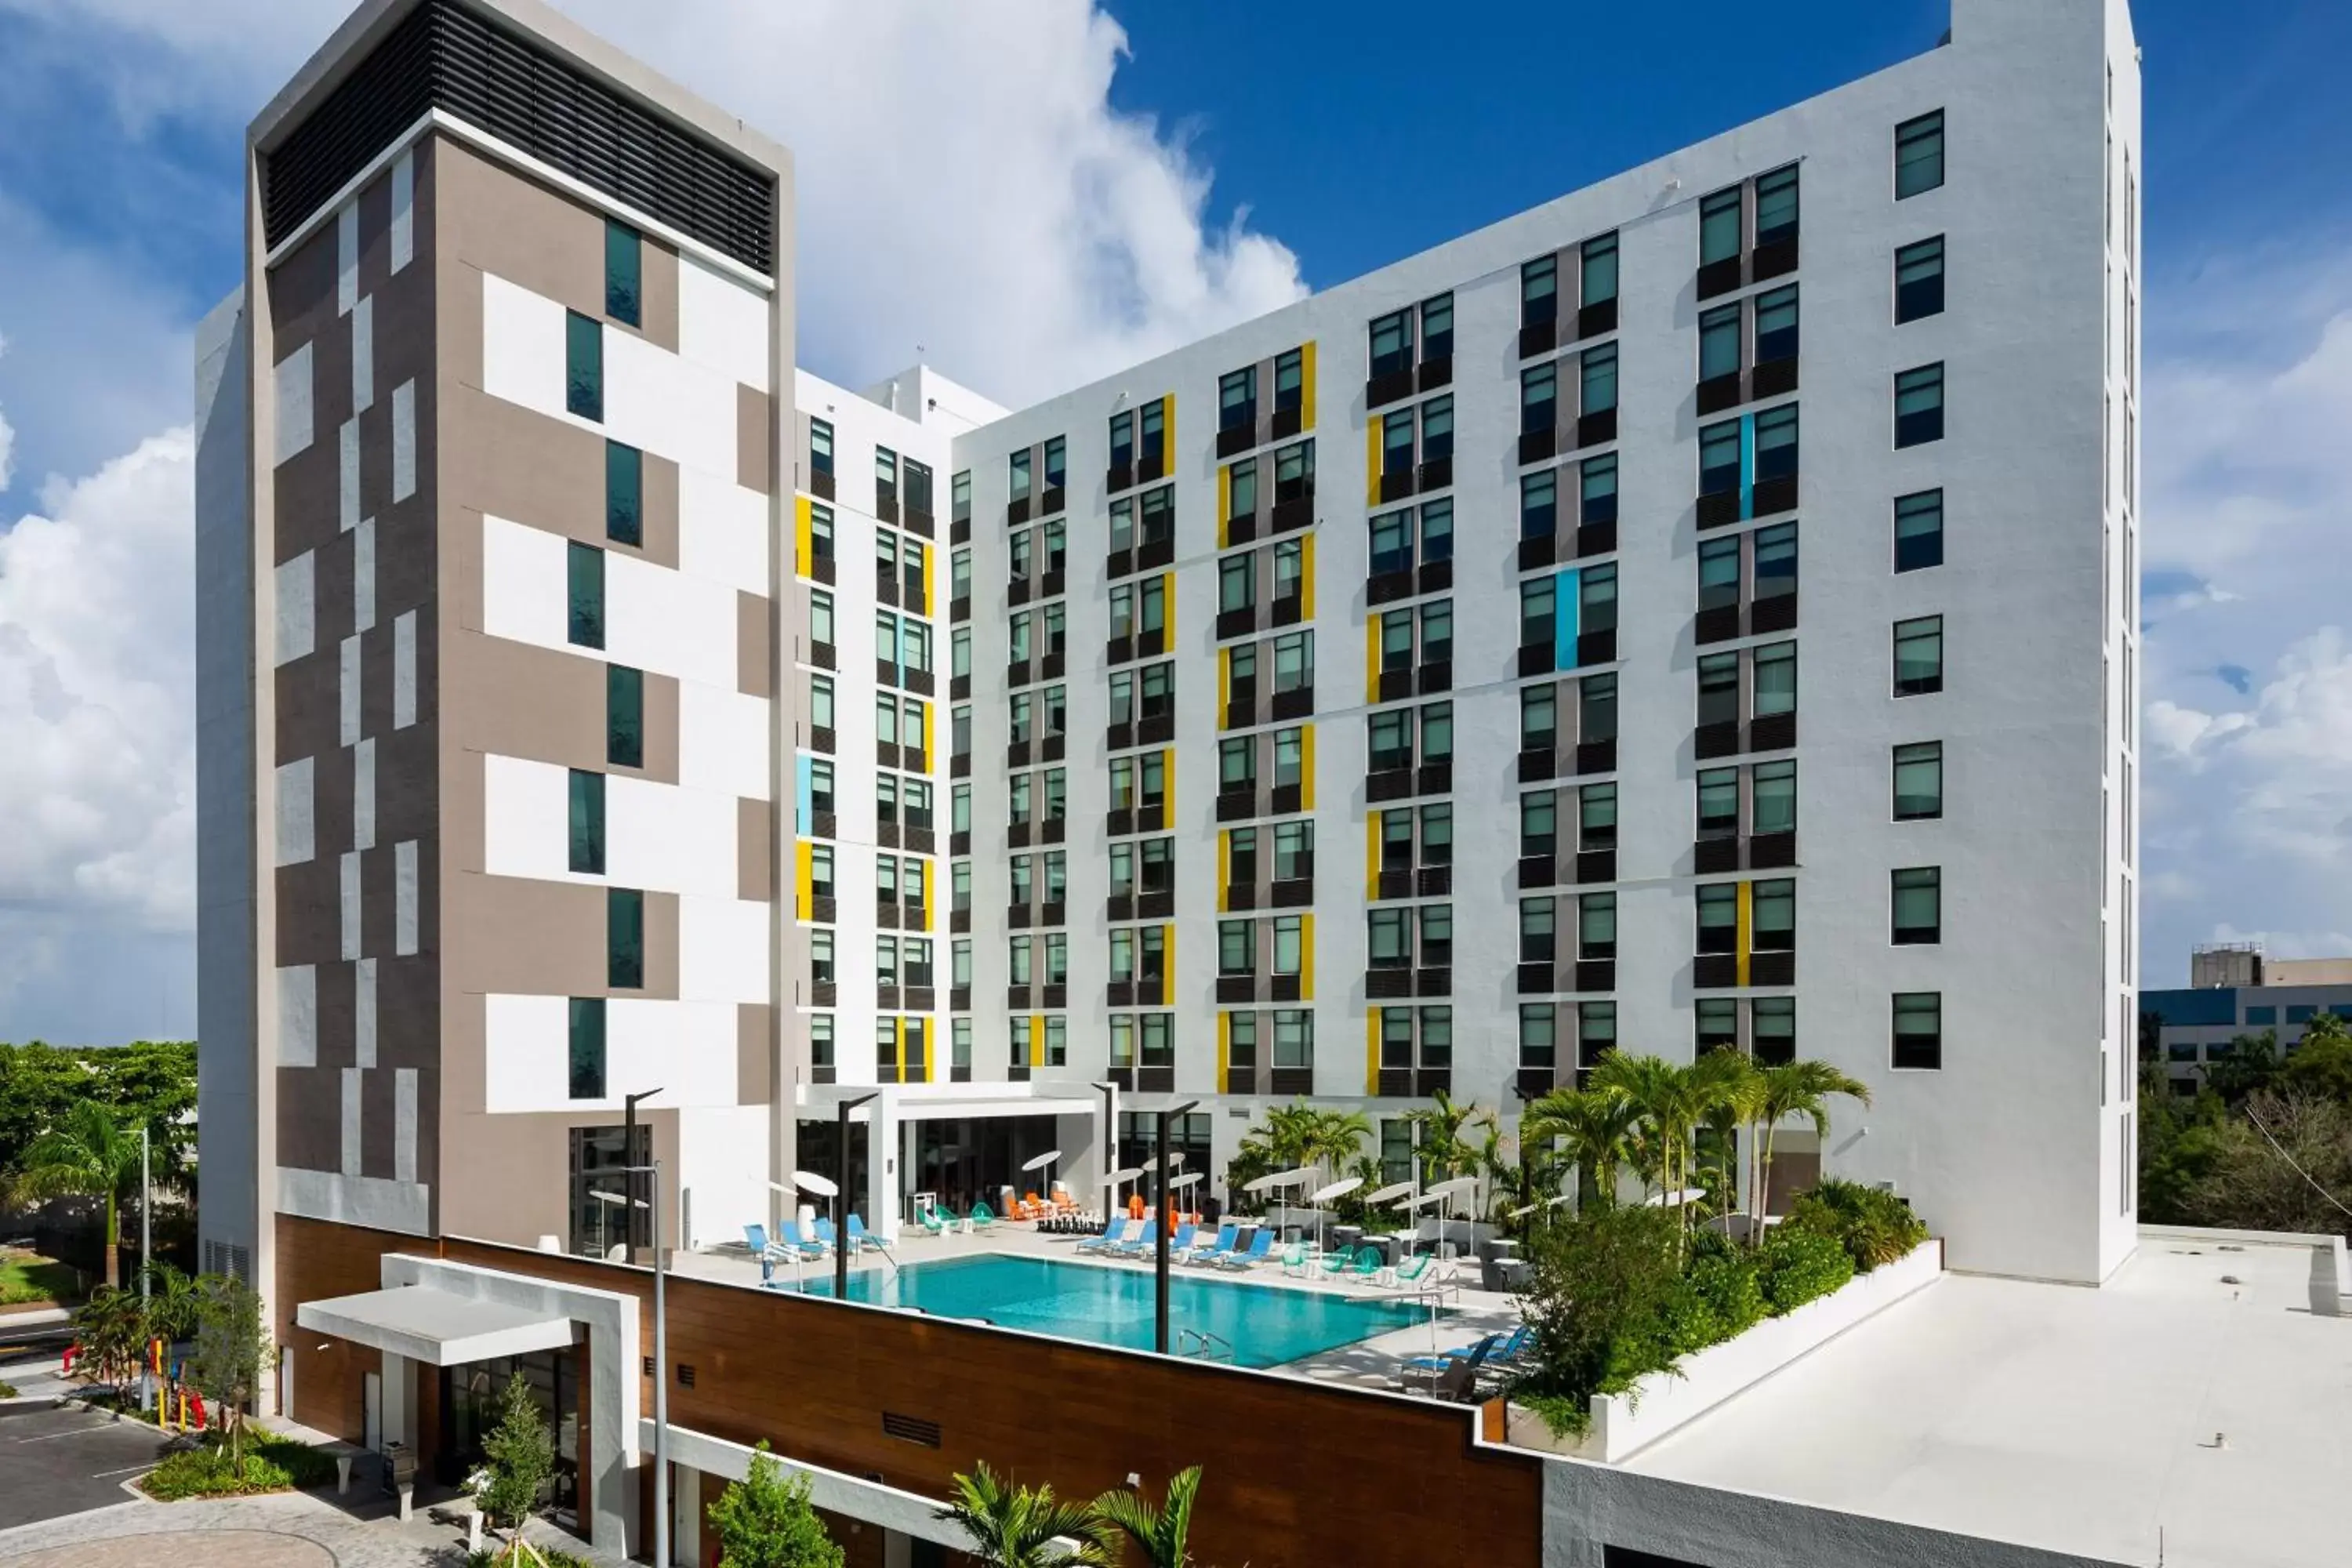 Property building, Swimming Pool in Aloft Miami Aventura